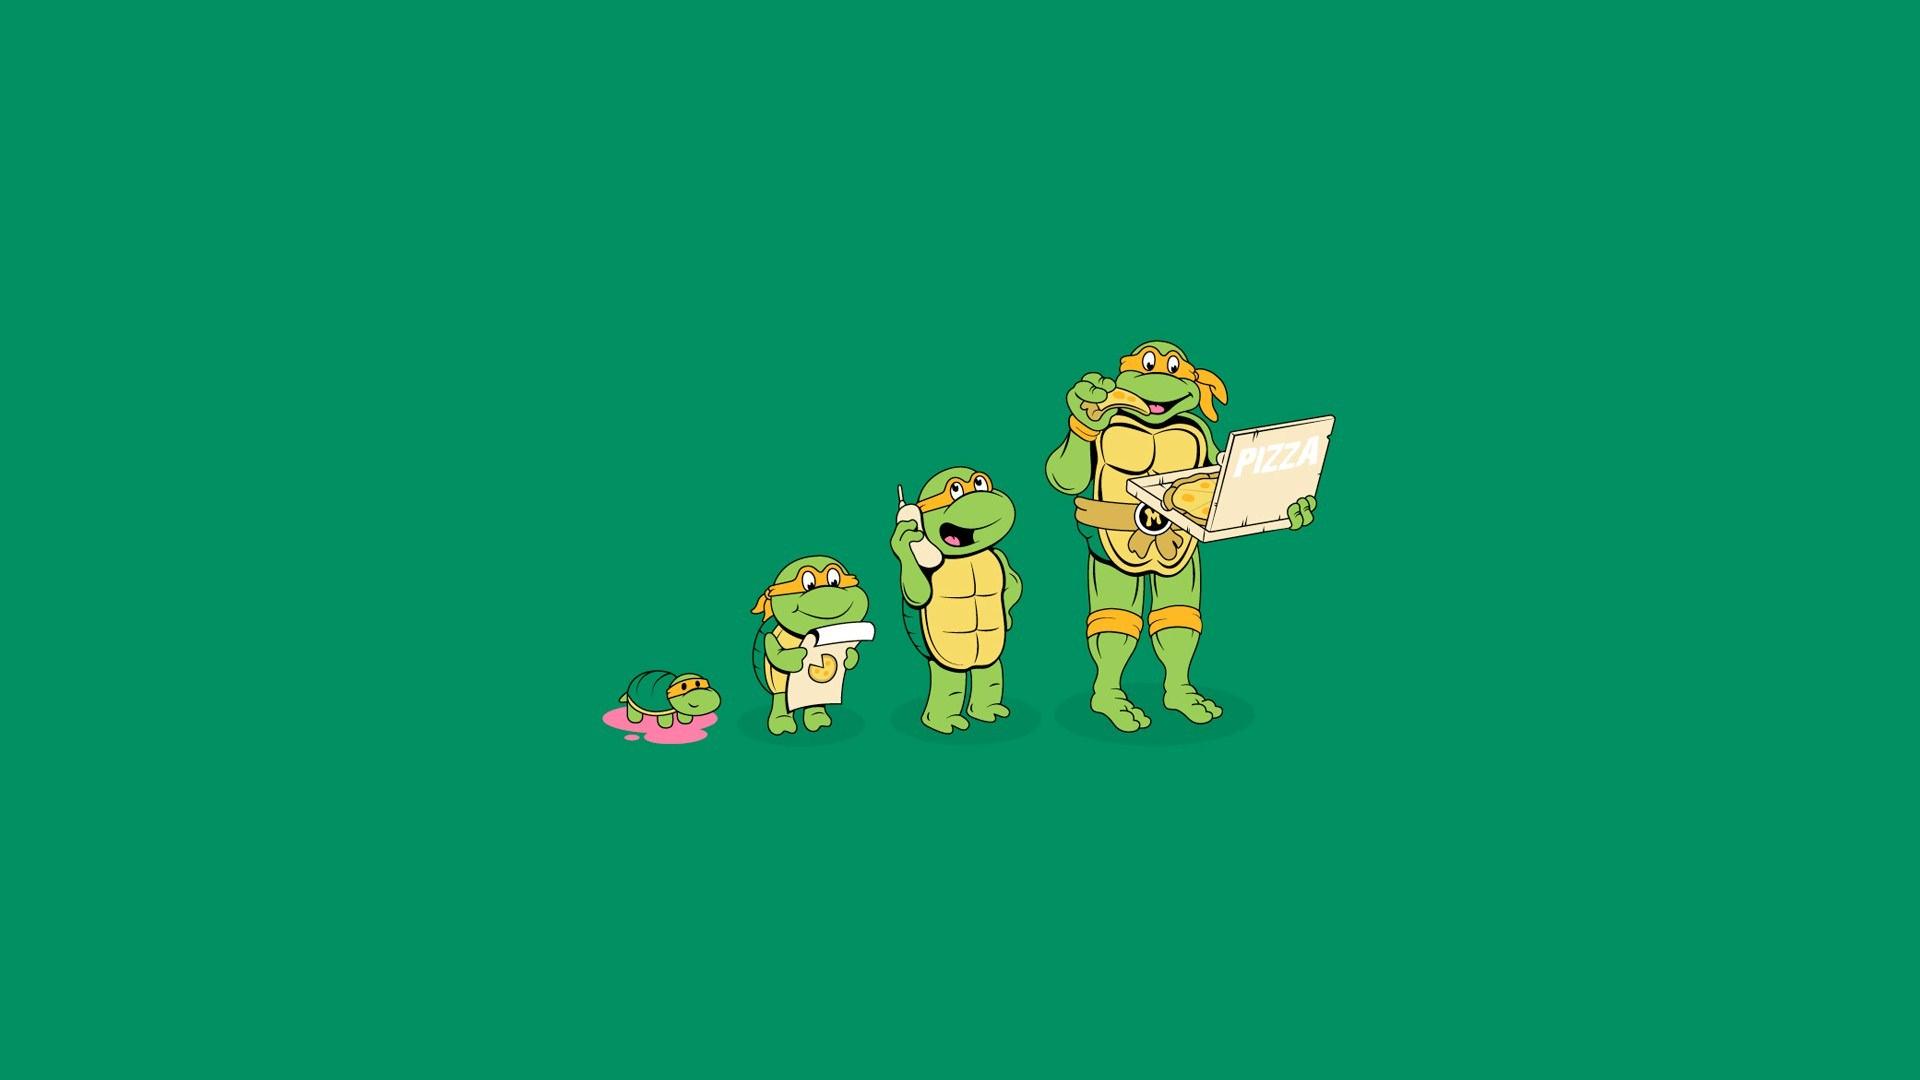 1980s Teenage Mutant Ninja Turtles Wallpapers Top Free 1980s Teenage Mutant Ninja Turtles Backgrounds Wallpaperaccess